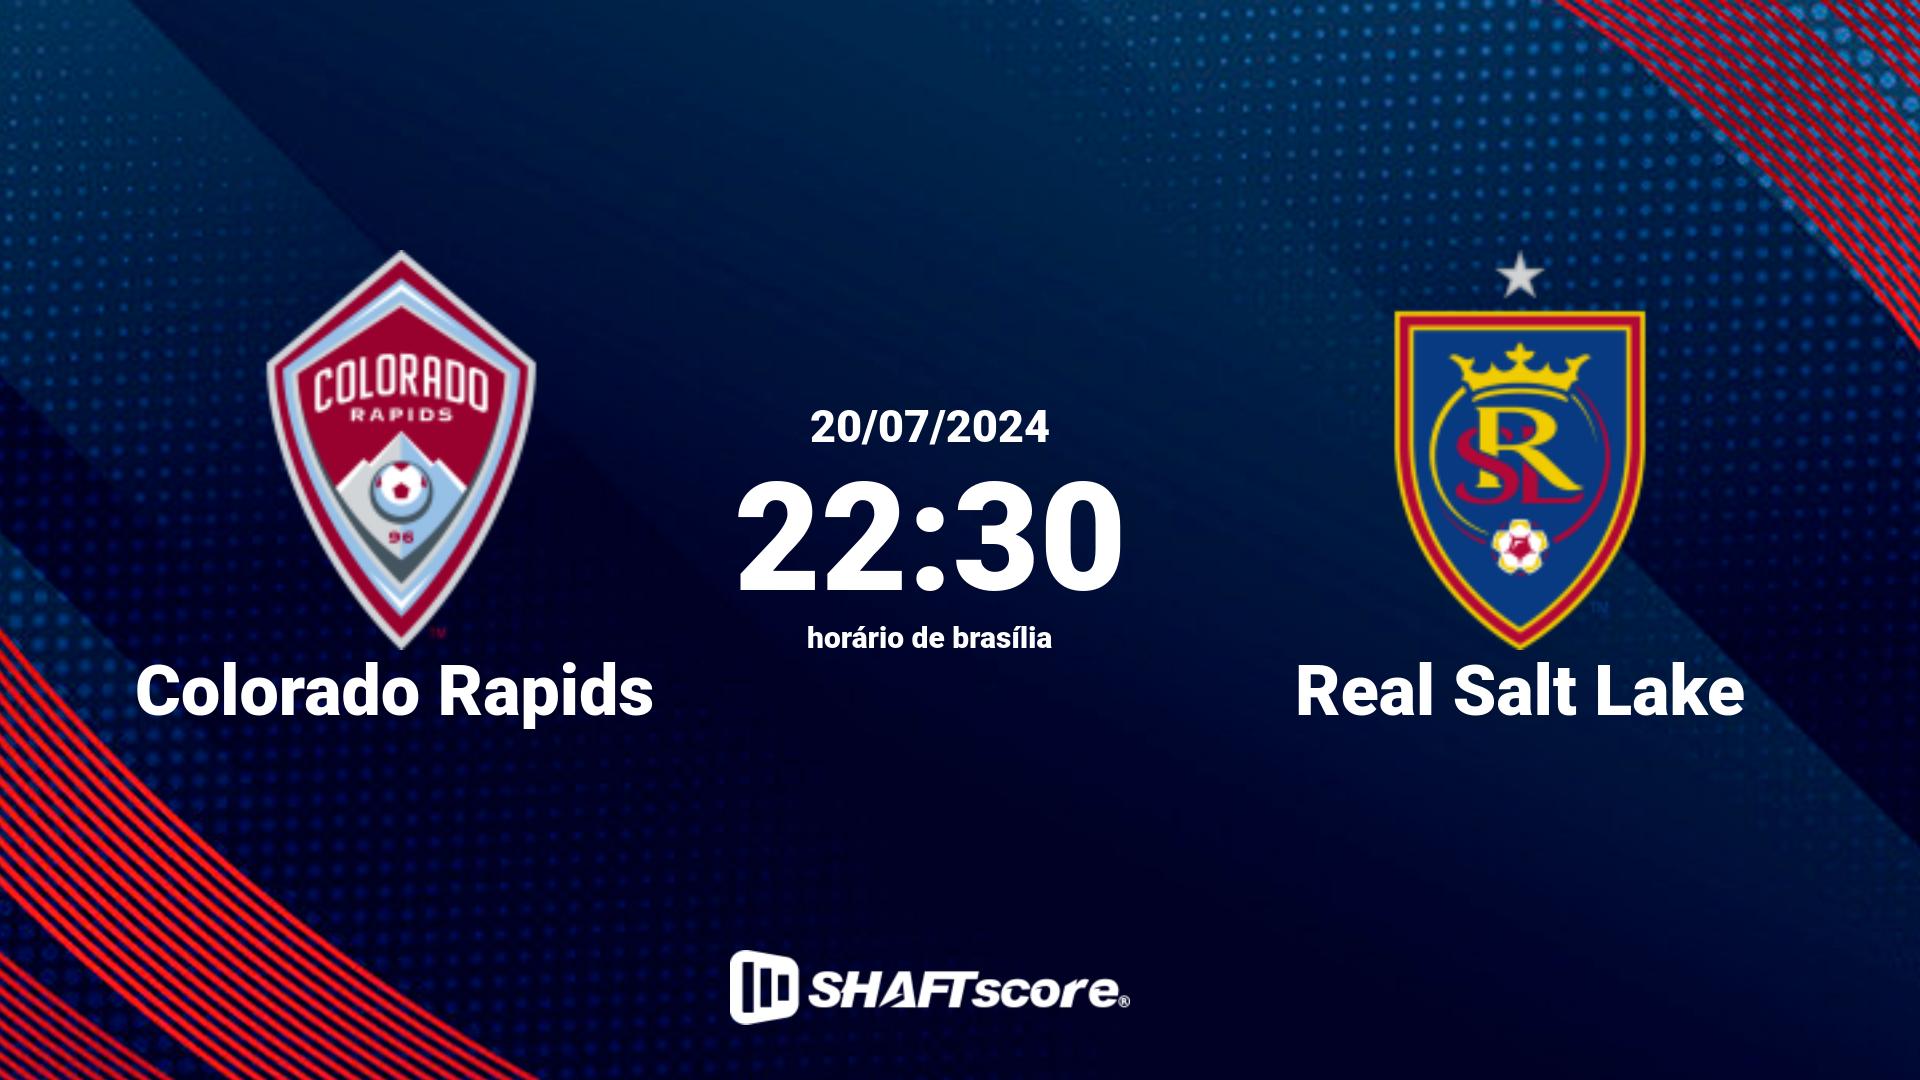 Estatísticas do jogo Colorado Rapids vs Real Salt Lake 20.07 22:30